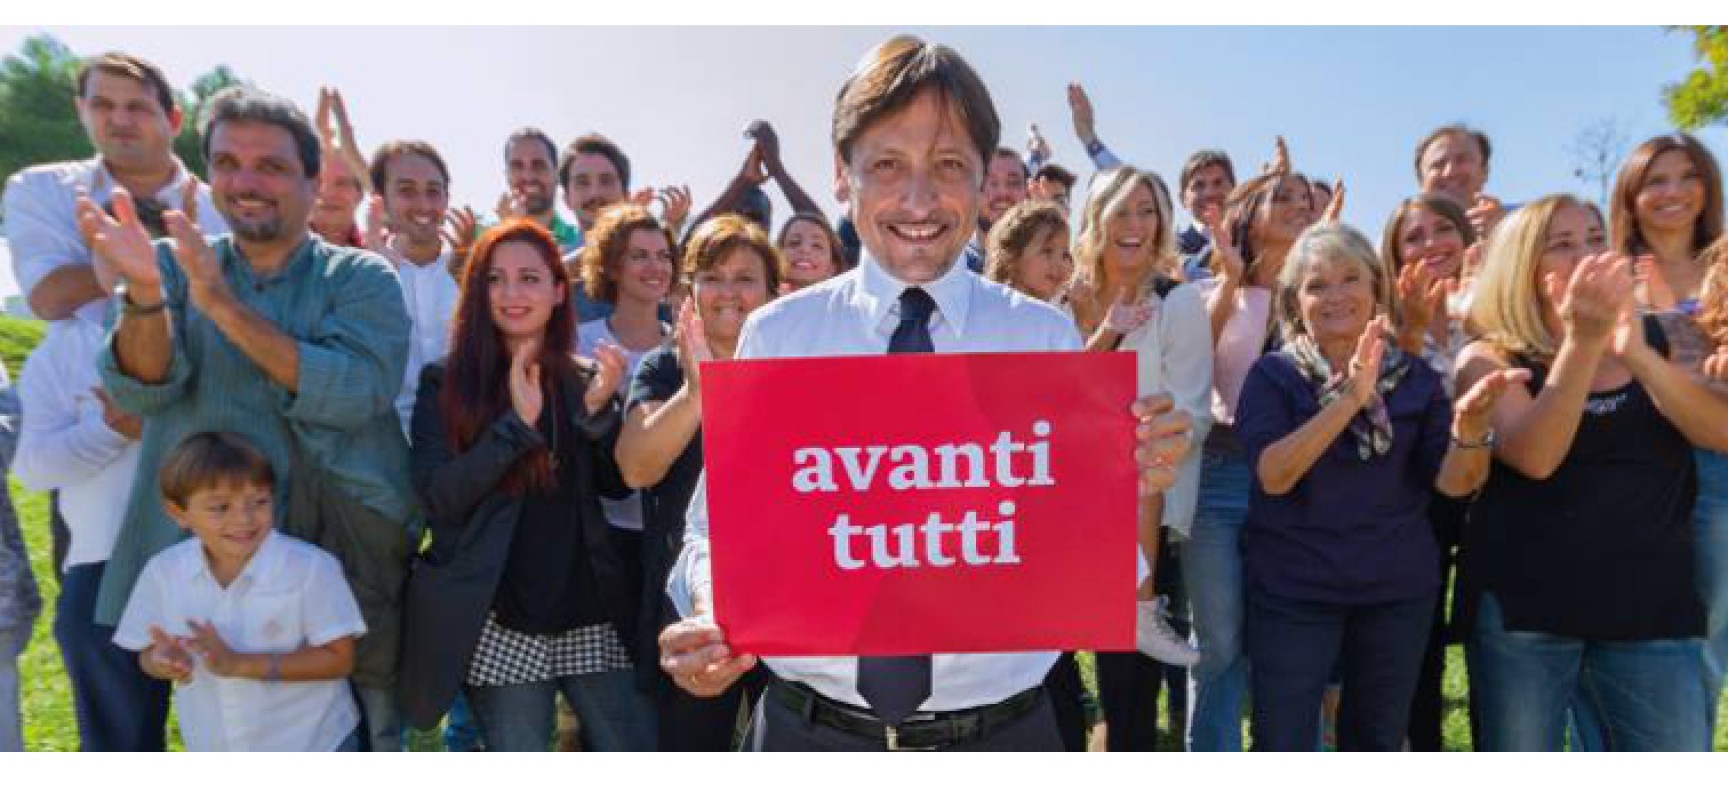 “Avanti l’innovazione”, il senatore Dario Stefàno a Bisceglie per le Primarie Puglia 2015